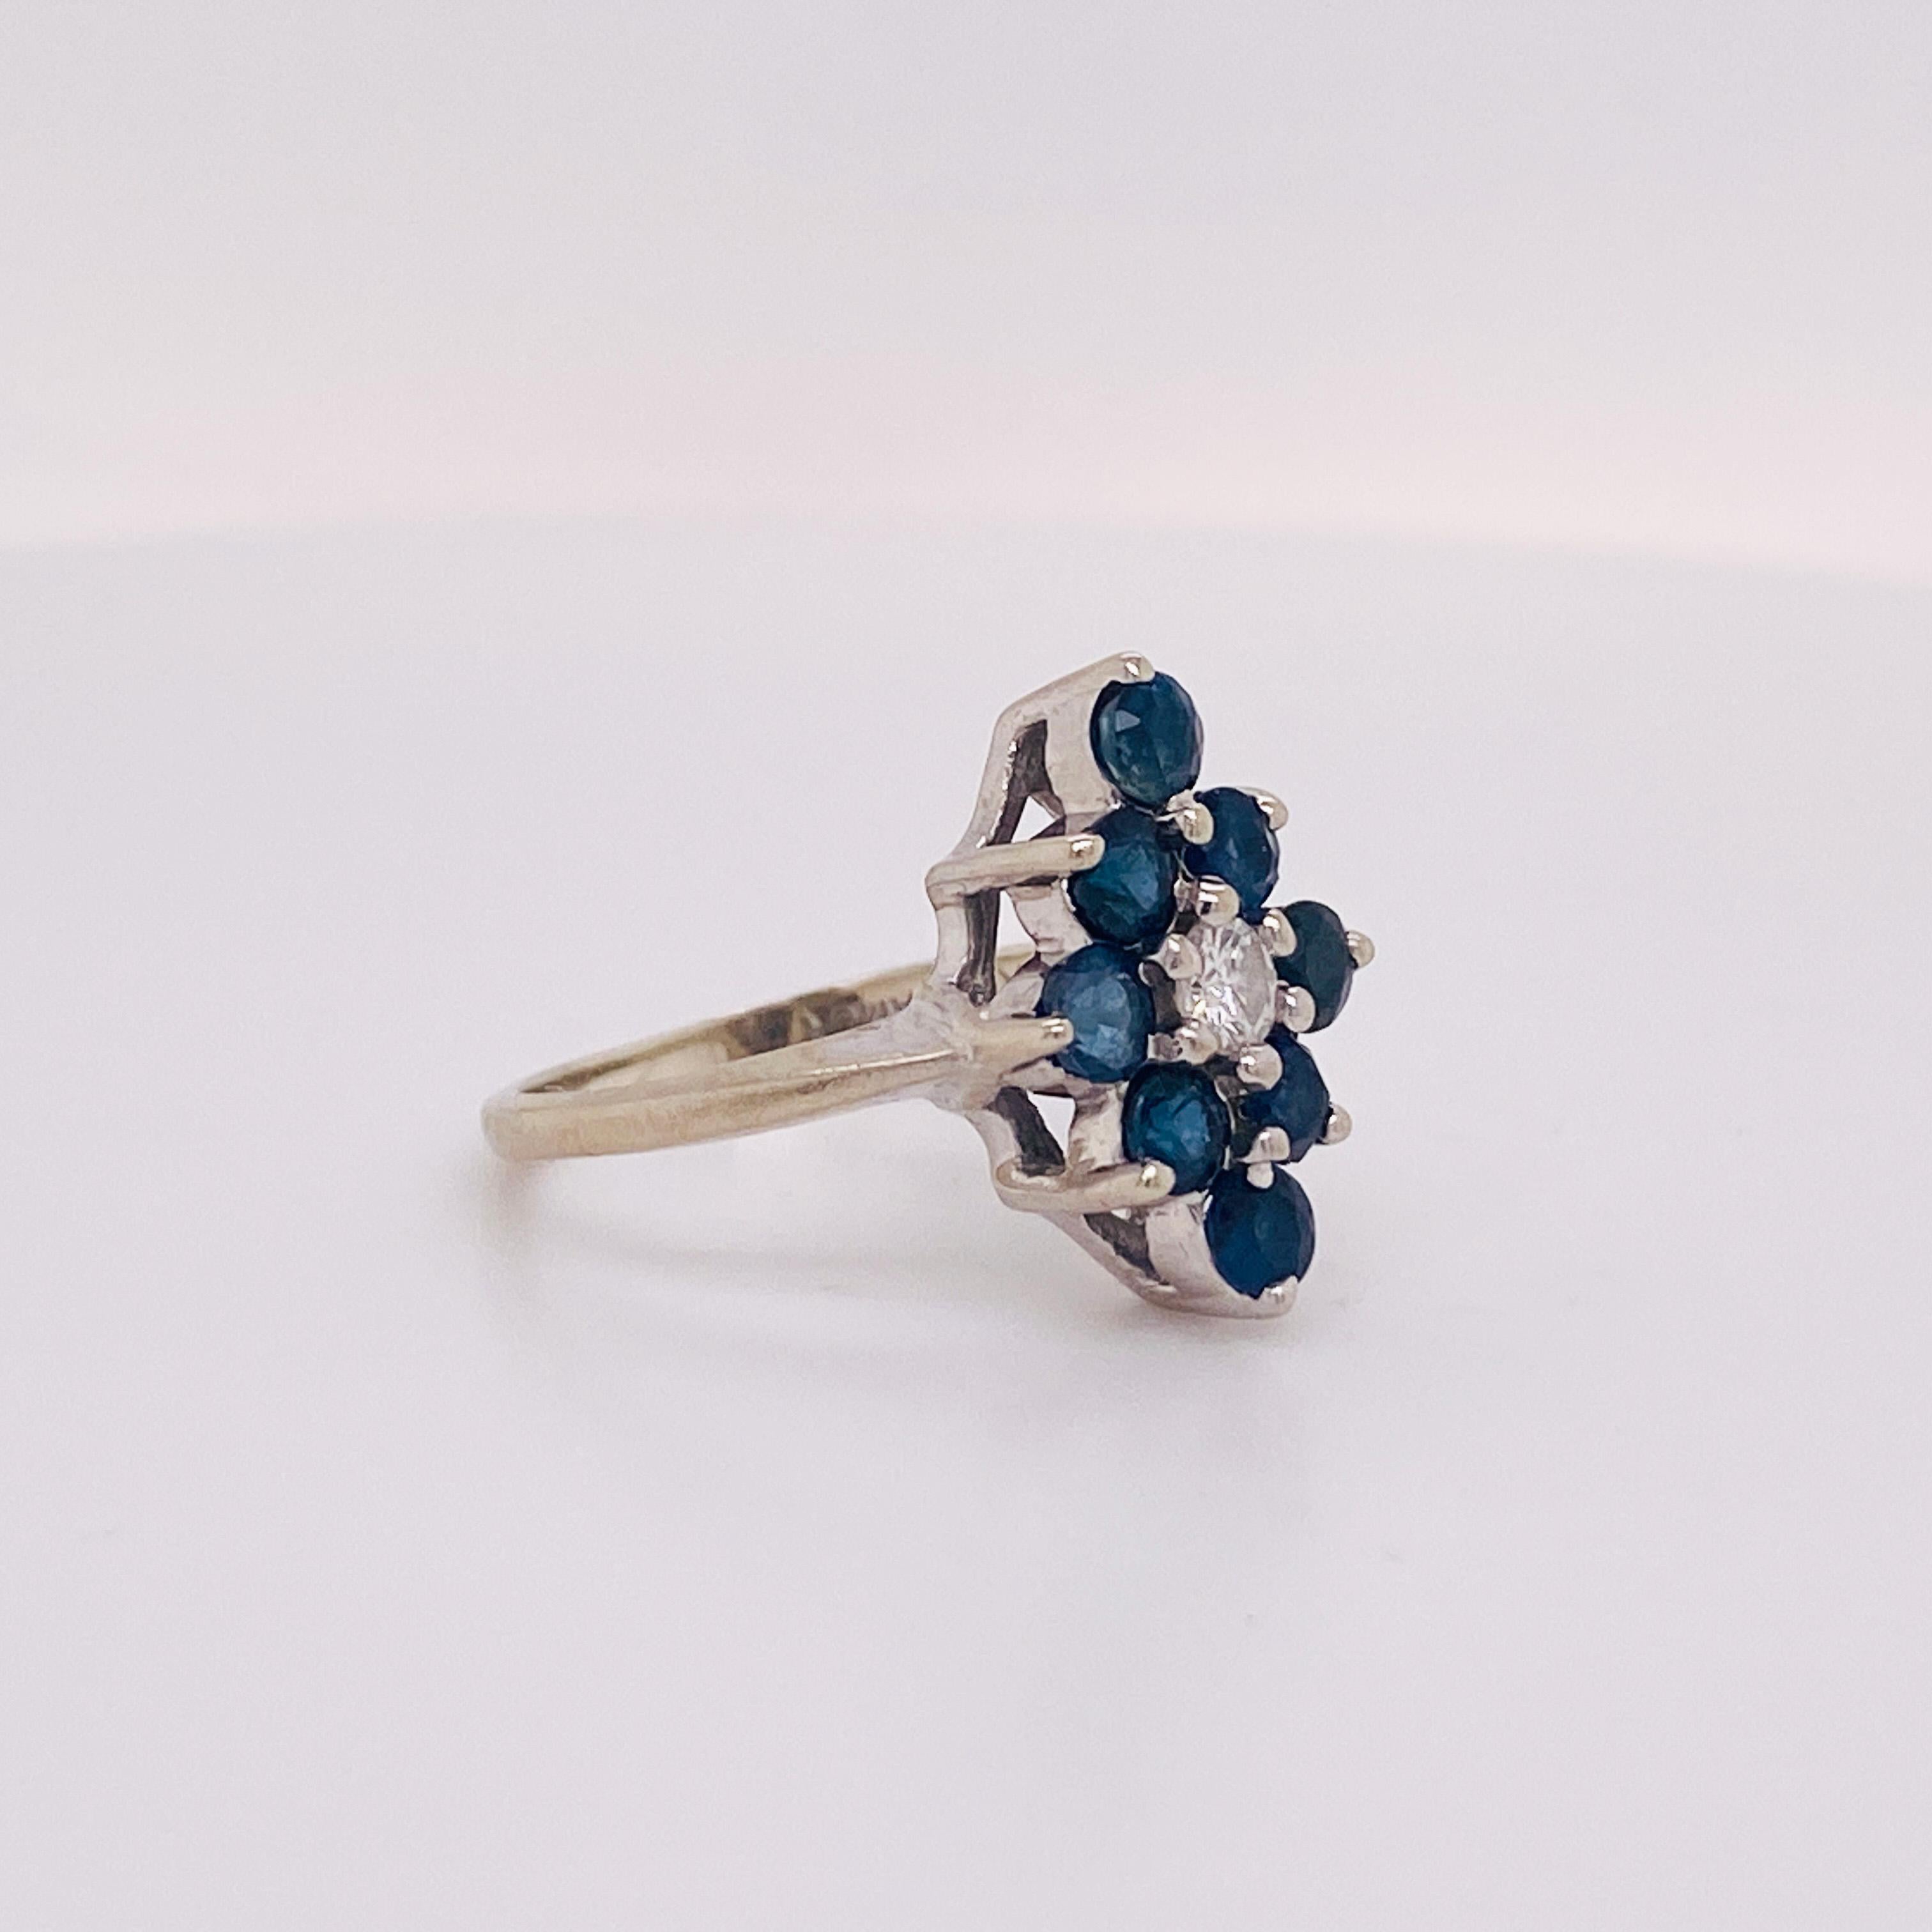 Dieser wunderschöne Ring aus 14 Karat Weißgold mit Saphiren und Diamanten ist das perfekte Geschenk für einen geliebten Menschen oder für Sie selbst. Sind Sie eine blaue Königin der Diamanten? Die Diamantform um einen zentralen Diamanten ist perfekt